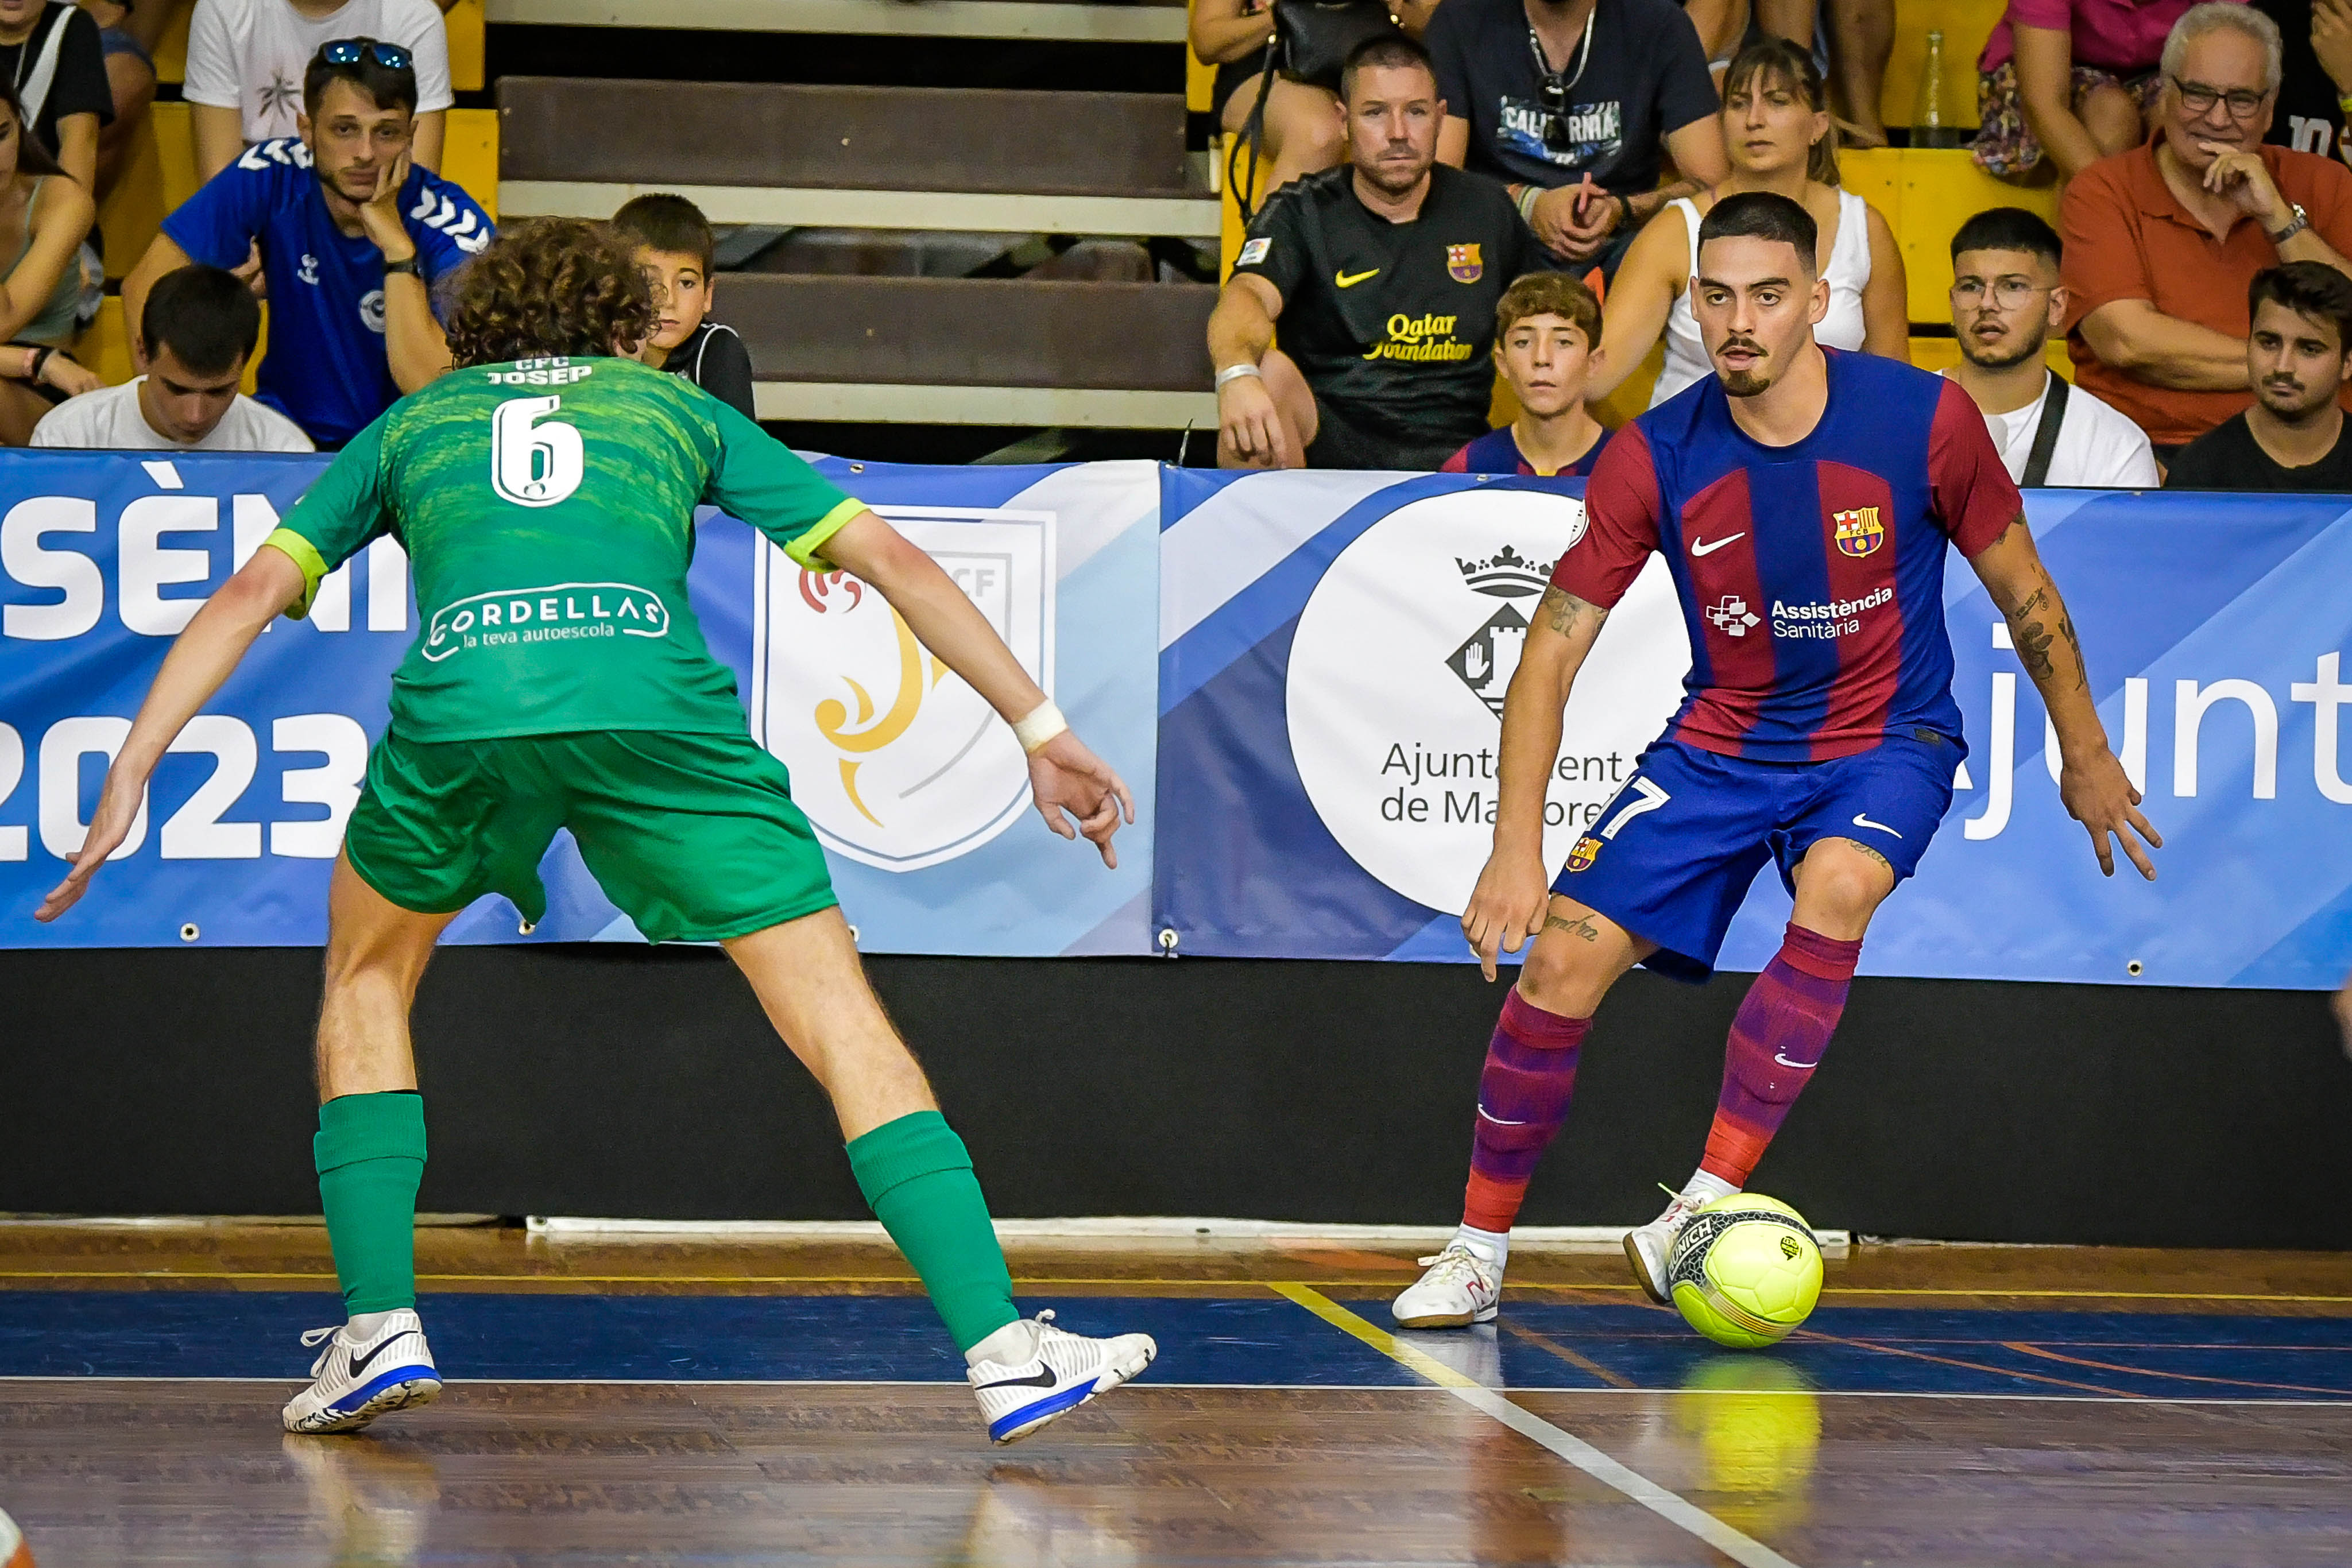 Josep defensant a Erick, autor de dos dels gols del partit. FOTO: FCF